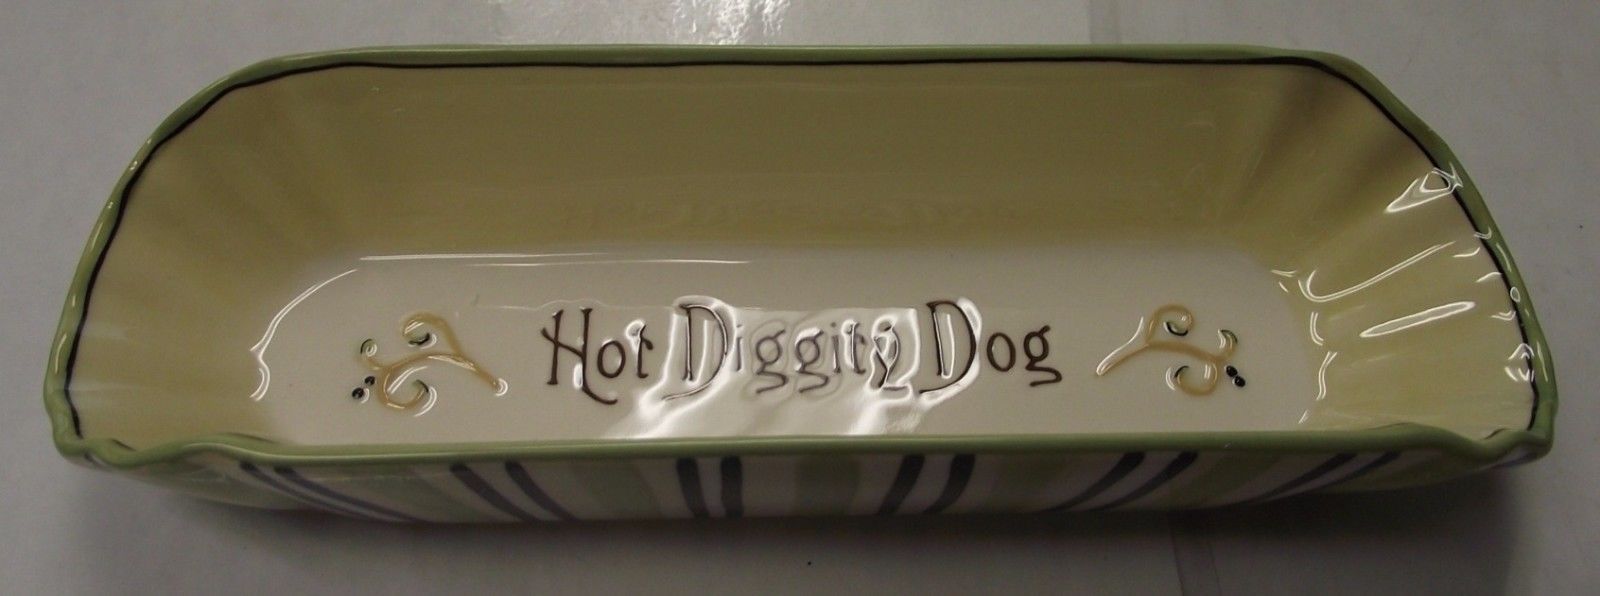 Grasslands Road 461261 Ceramic Hot Dog Holder 8-1/4" Long